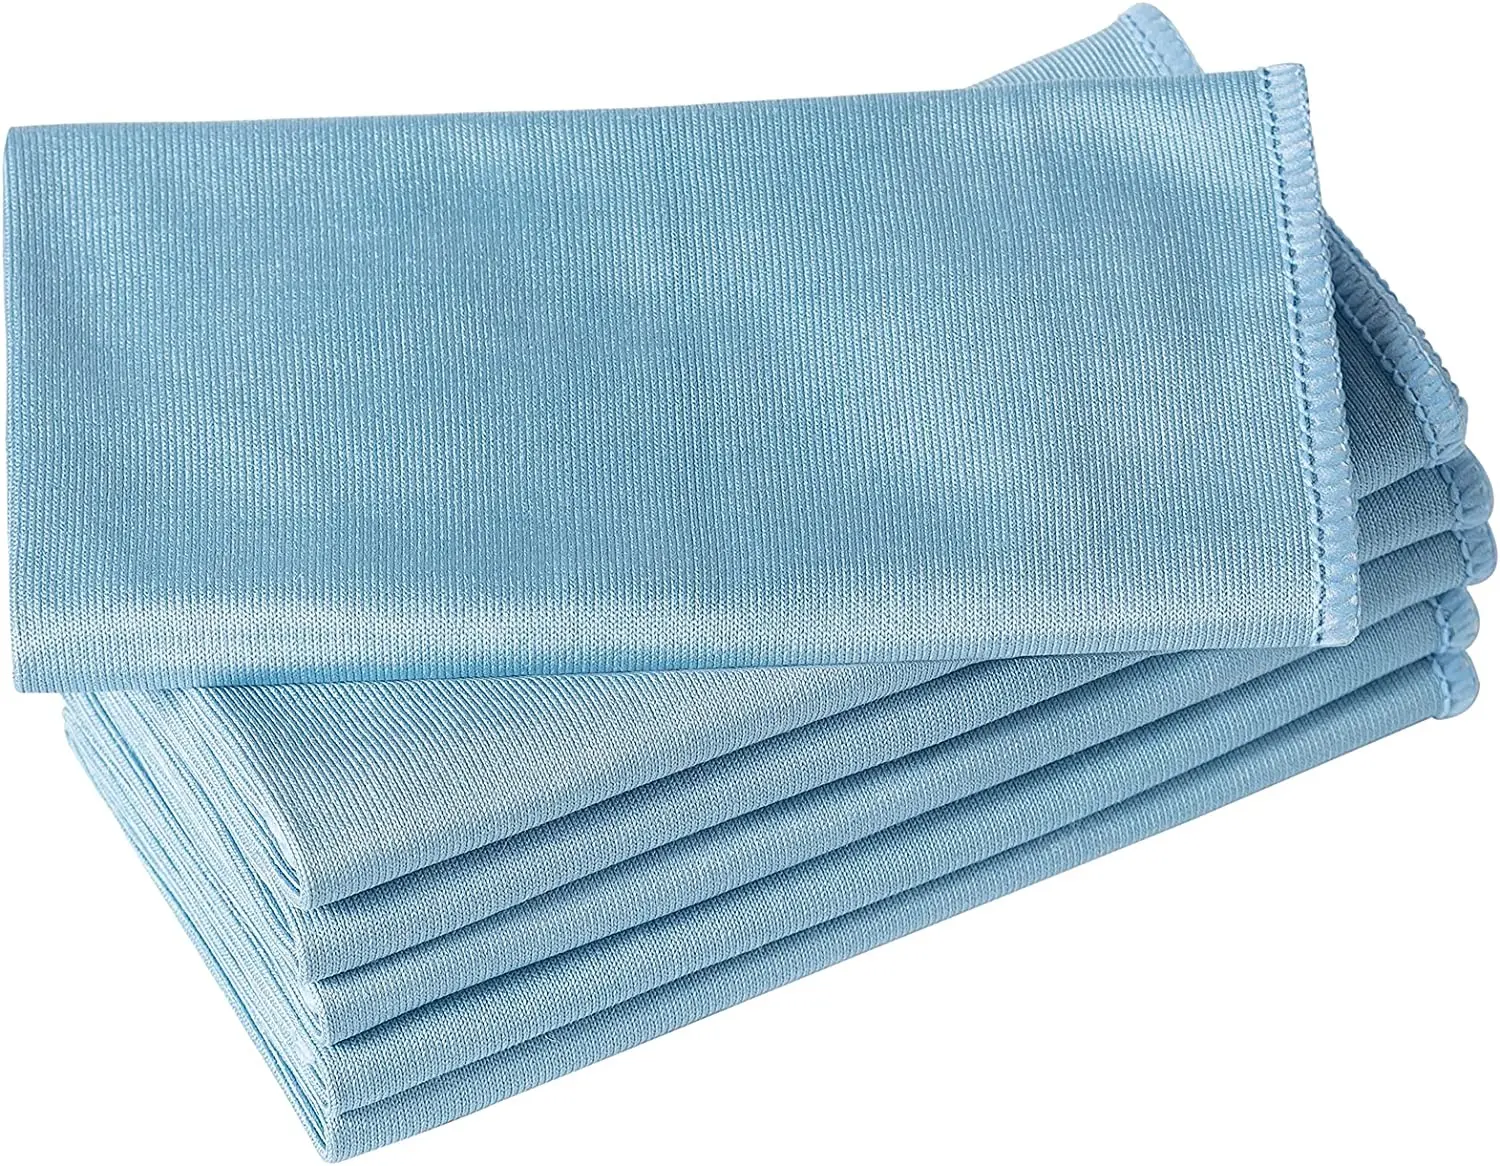 सफाई तौलिया सबसे बेच Microfiber सुखाने तौलिया खिड़की के शीशे कपड़ा फैक्टरी थोक Microfiber 35*35cm या कस्टम ग्लास पोंछ